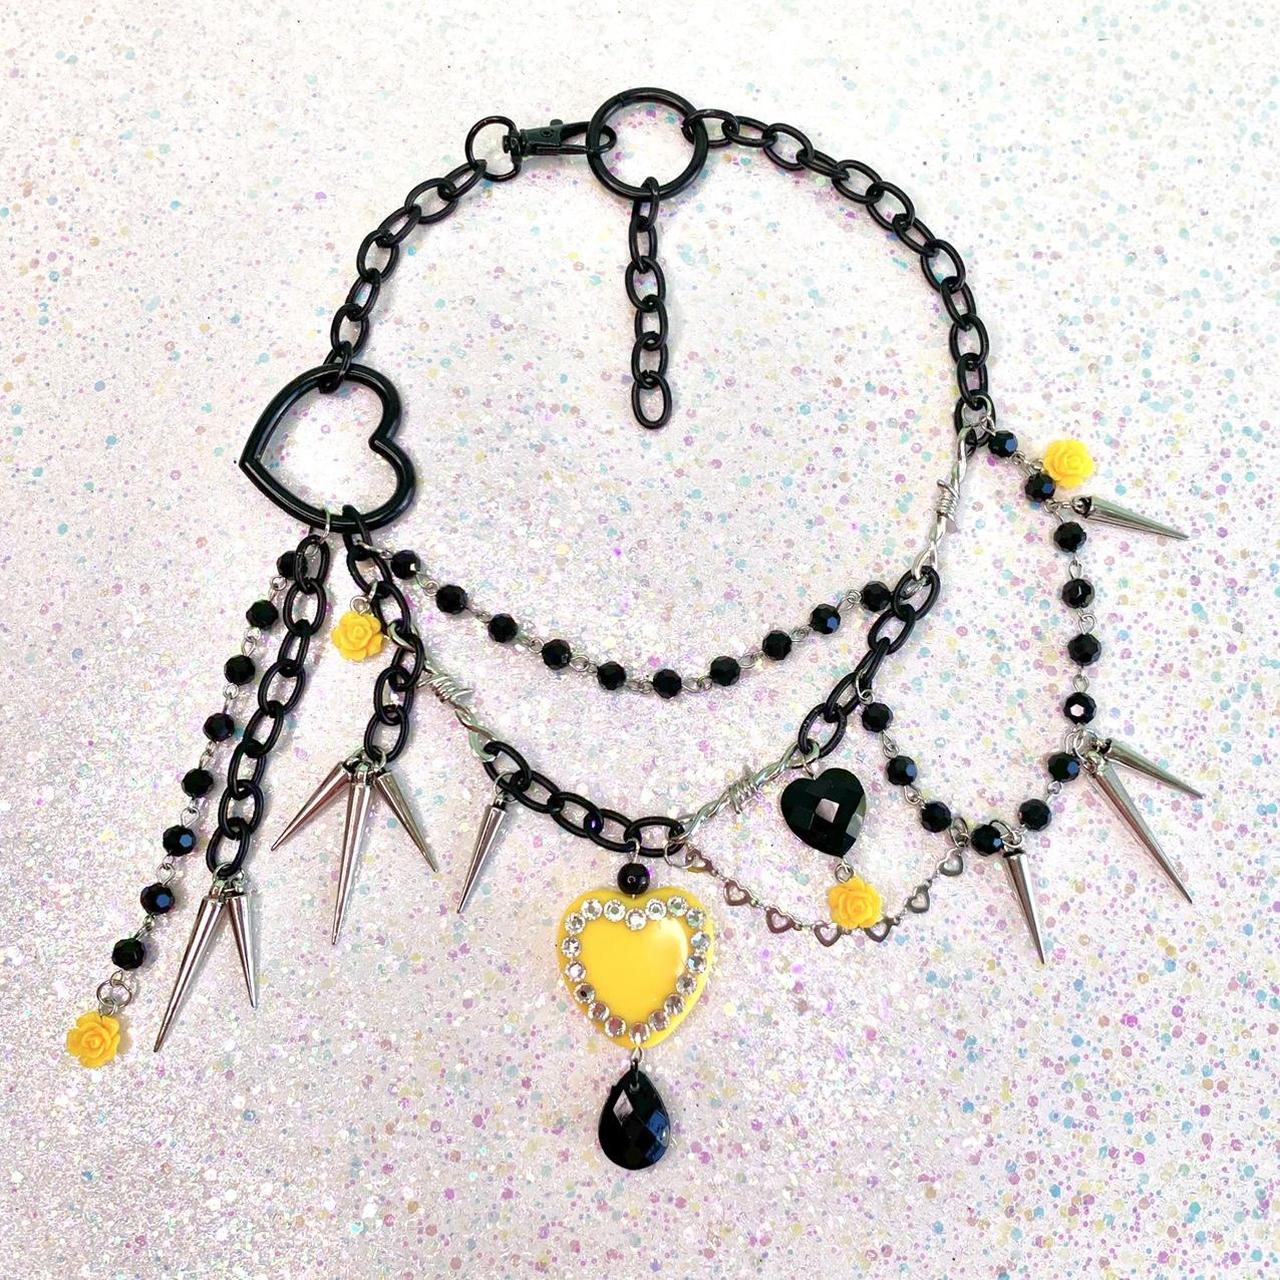 Sugarpill Women's Yellow and Black Jewellery